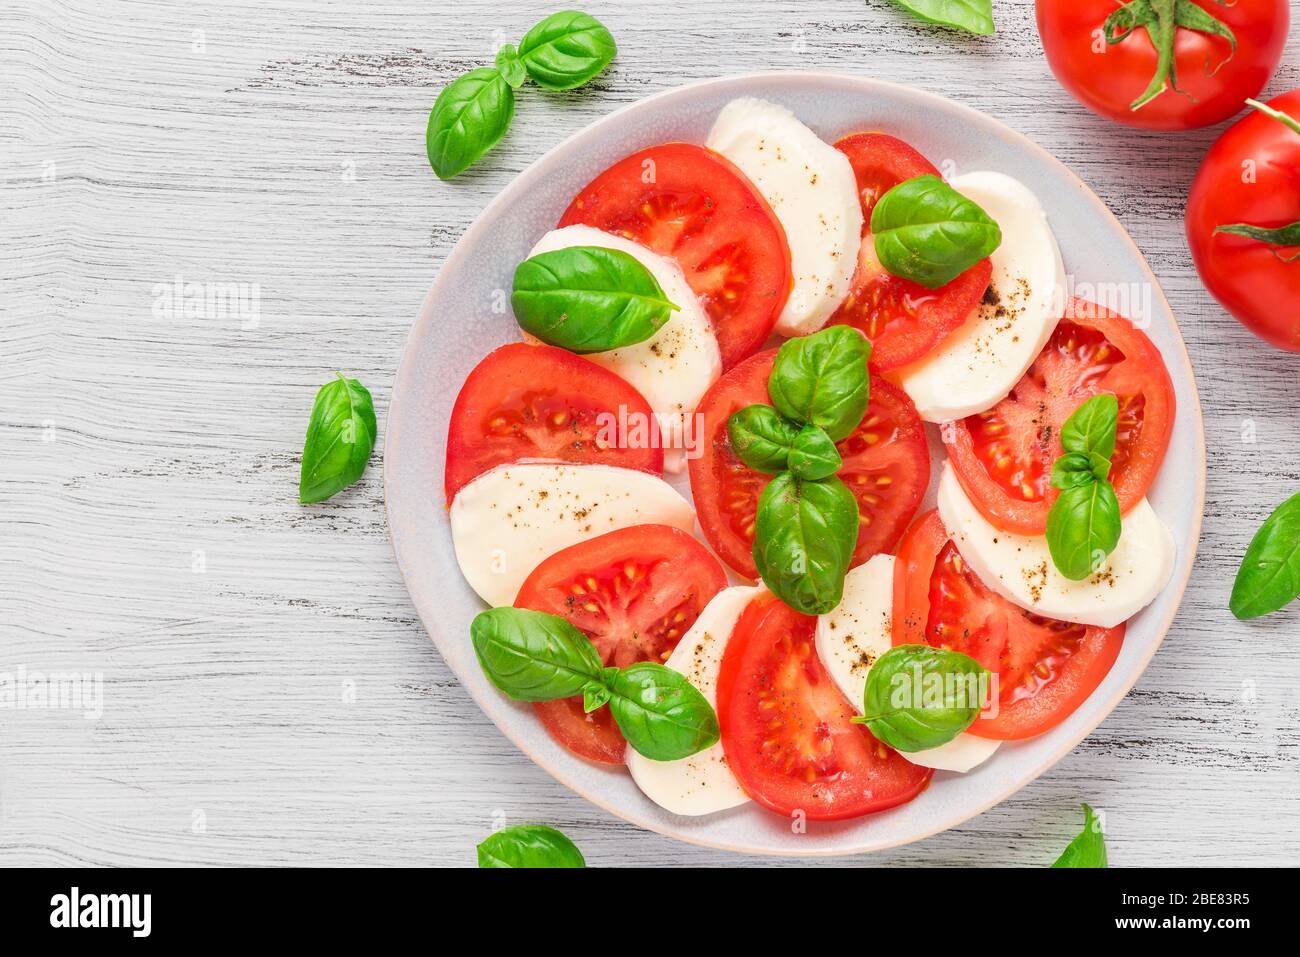 Insalata caprese con pomodori maturi e mozzarella con foglie di basilico fresco in un piatto. Cucina italiana, vista dall'alto Foto Stock